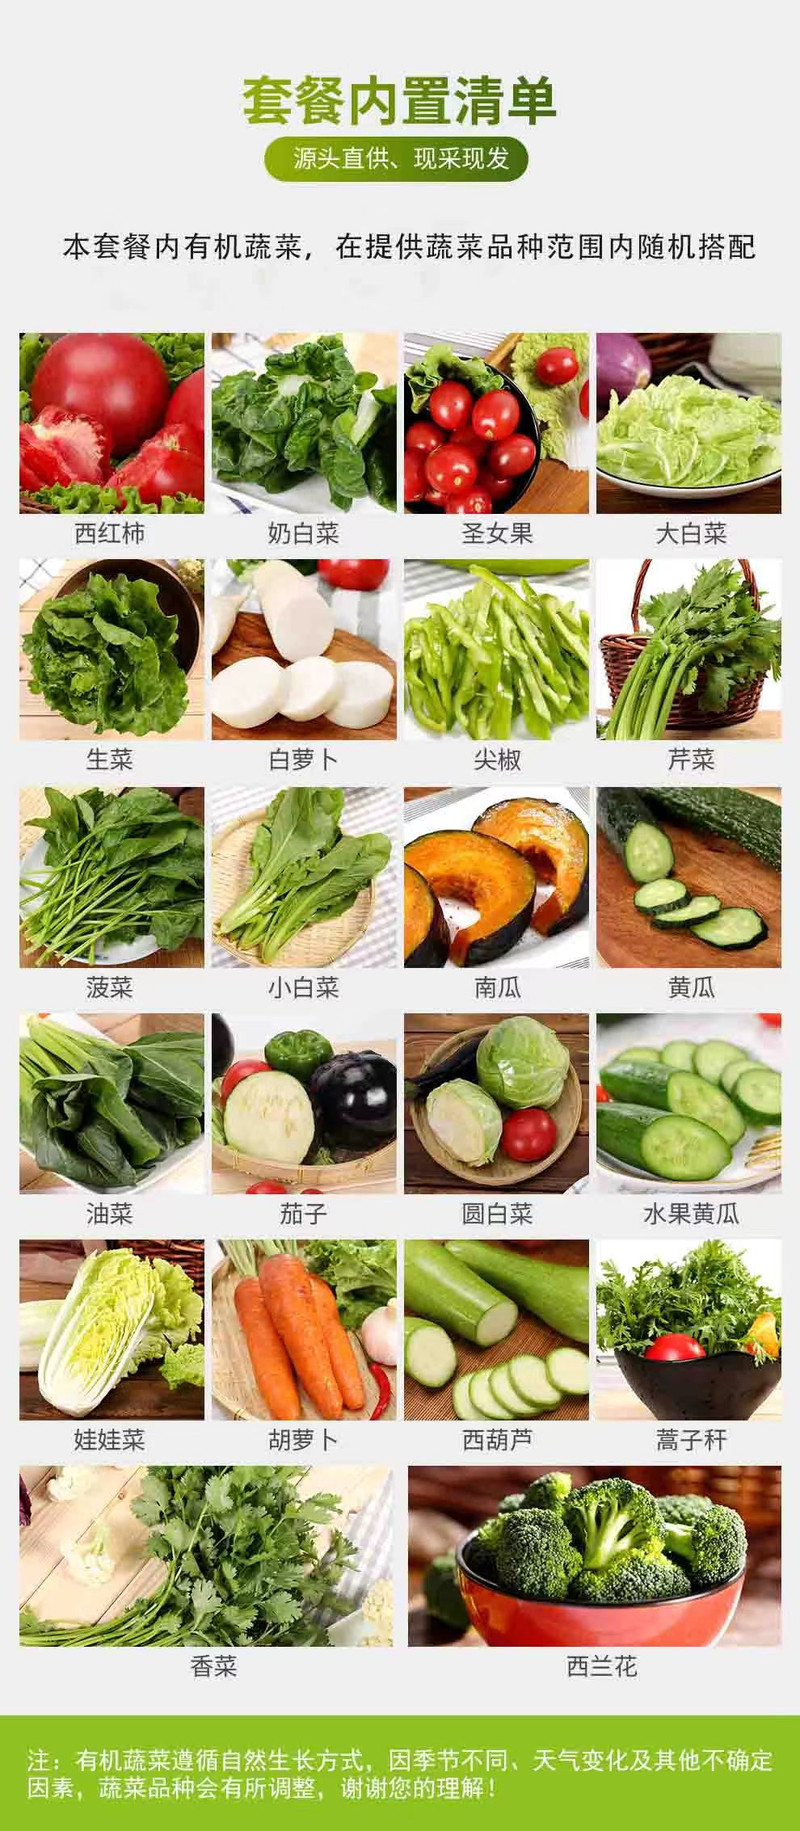 邮政农品 【北京优农】延庆北菜园有机蔬菜礼盒约3kg